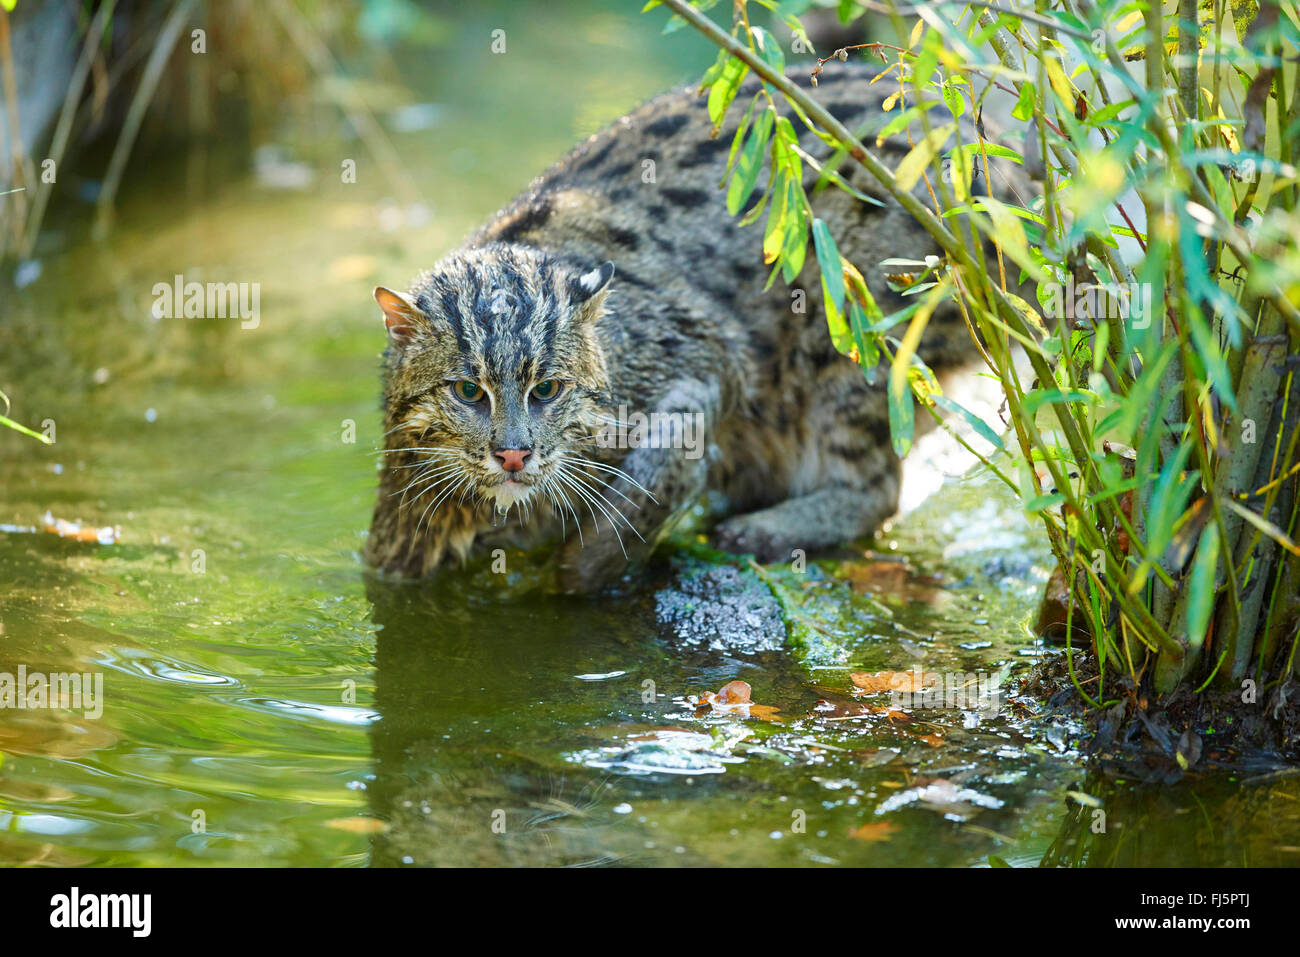 Pêche à la cat, Yu mao (Prionailurus viverrinus, Felis viverrinus), la chasse dans l'eau Banque D'Images